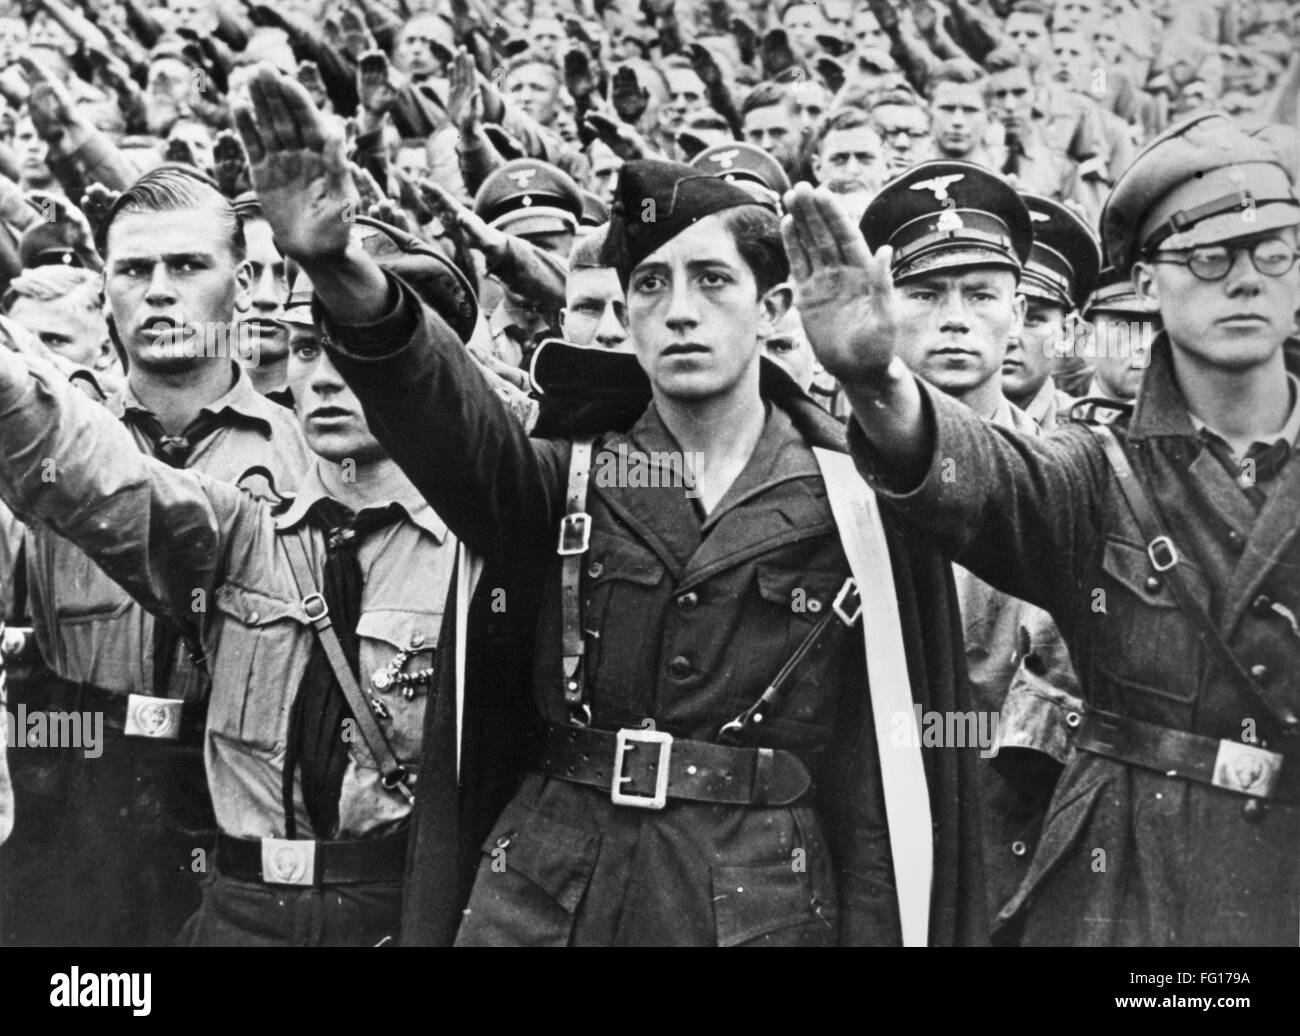 HITLER YOUTH, c1940. /NYoung hombres de las Juventudes Hitlerianas saludando. Fotografía, c1940. Foto de stock